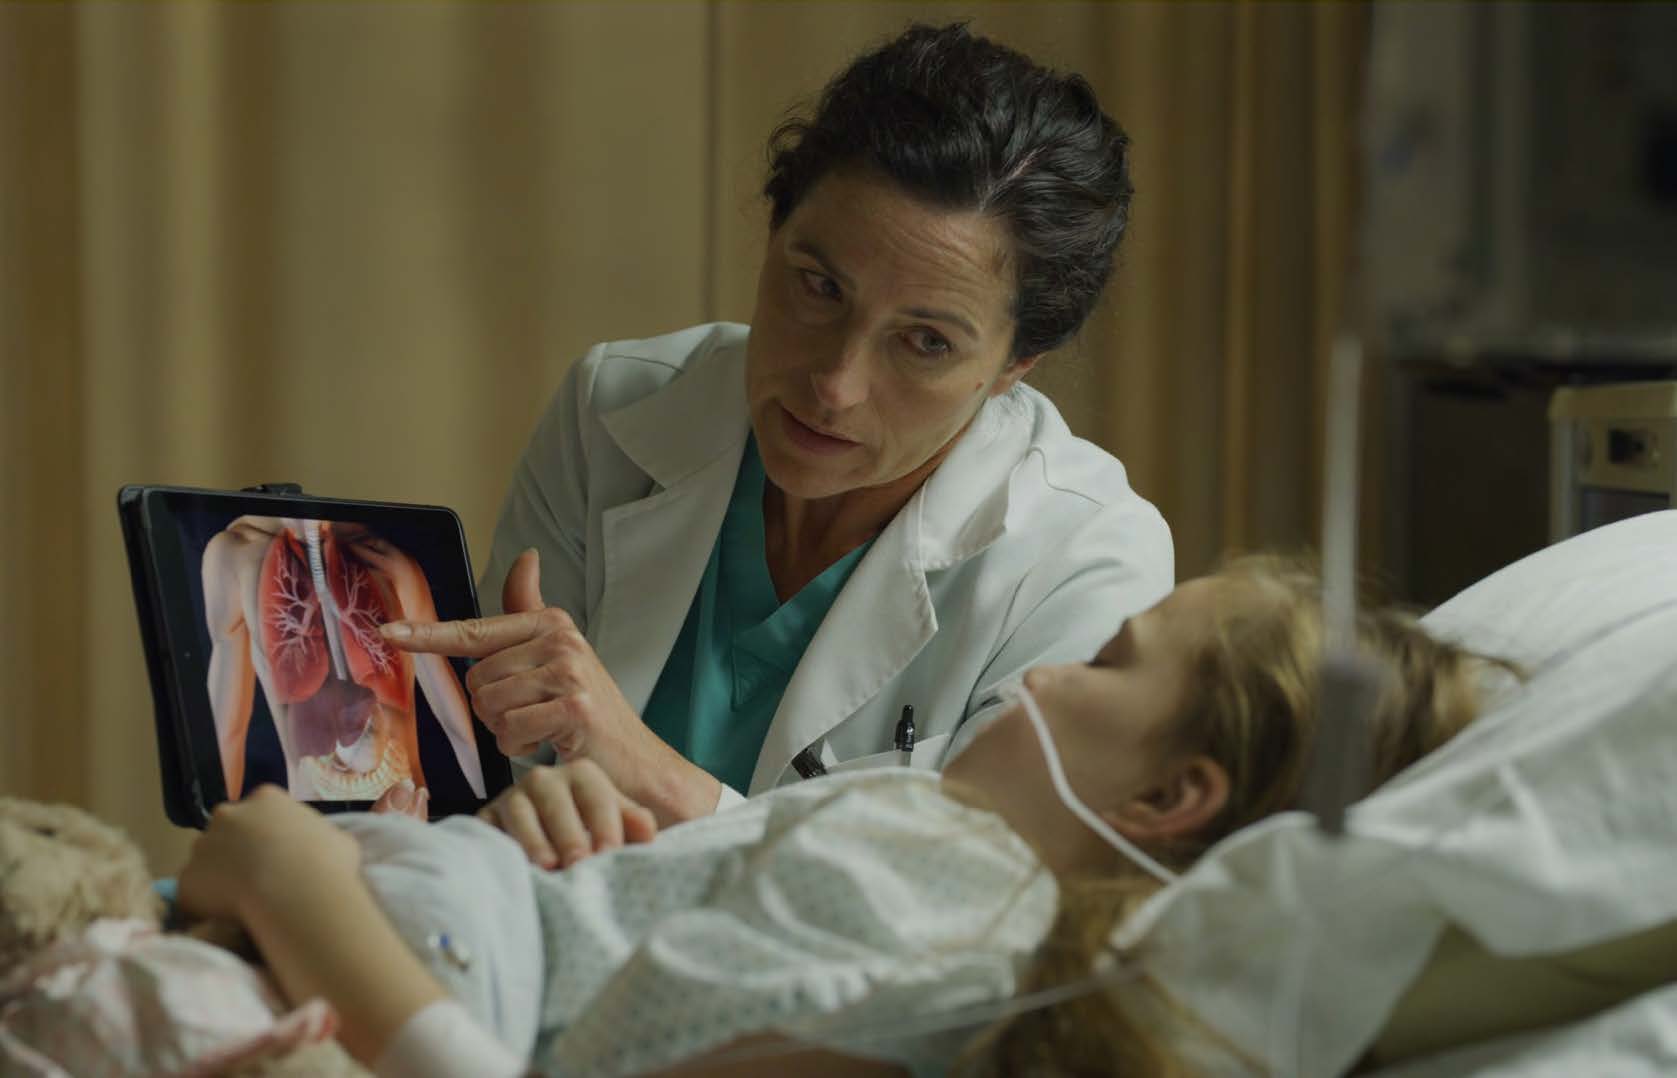 Uma menina loira está acamada e entubada. Ela olha com atenção para o ecrã de um tablet onde é visível um tronco humano e dentro dele os pulmões, em destaque. O tablet é segurado por uma senhora morena envergando bata branca.